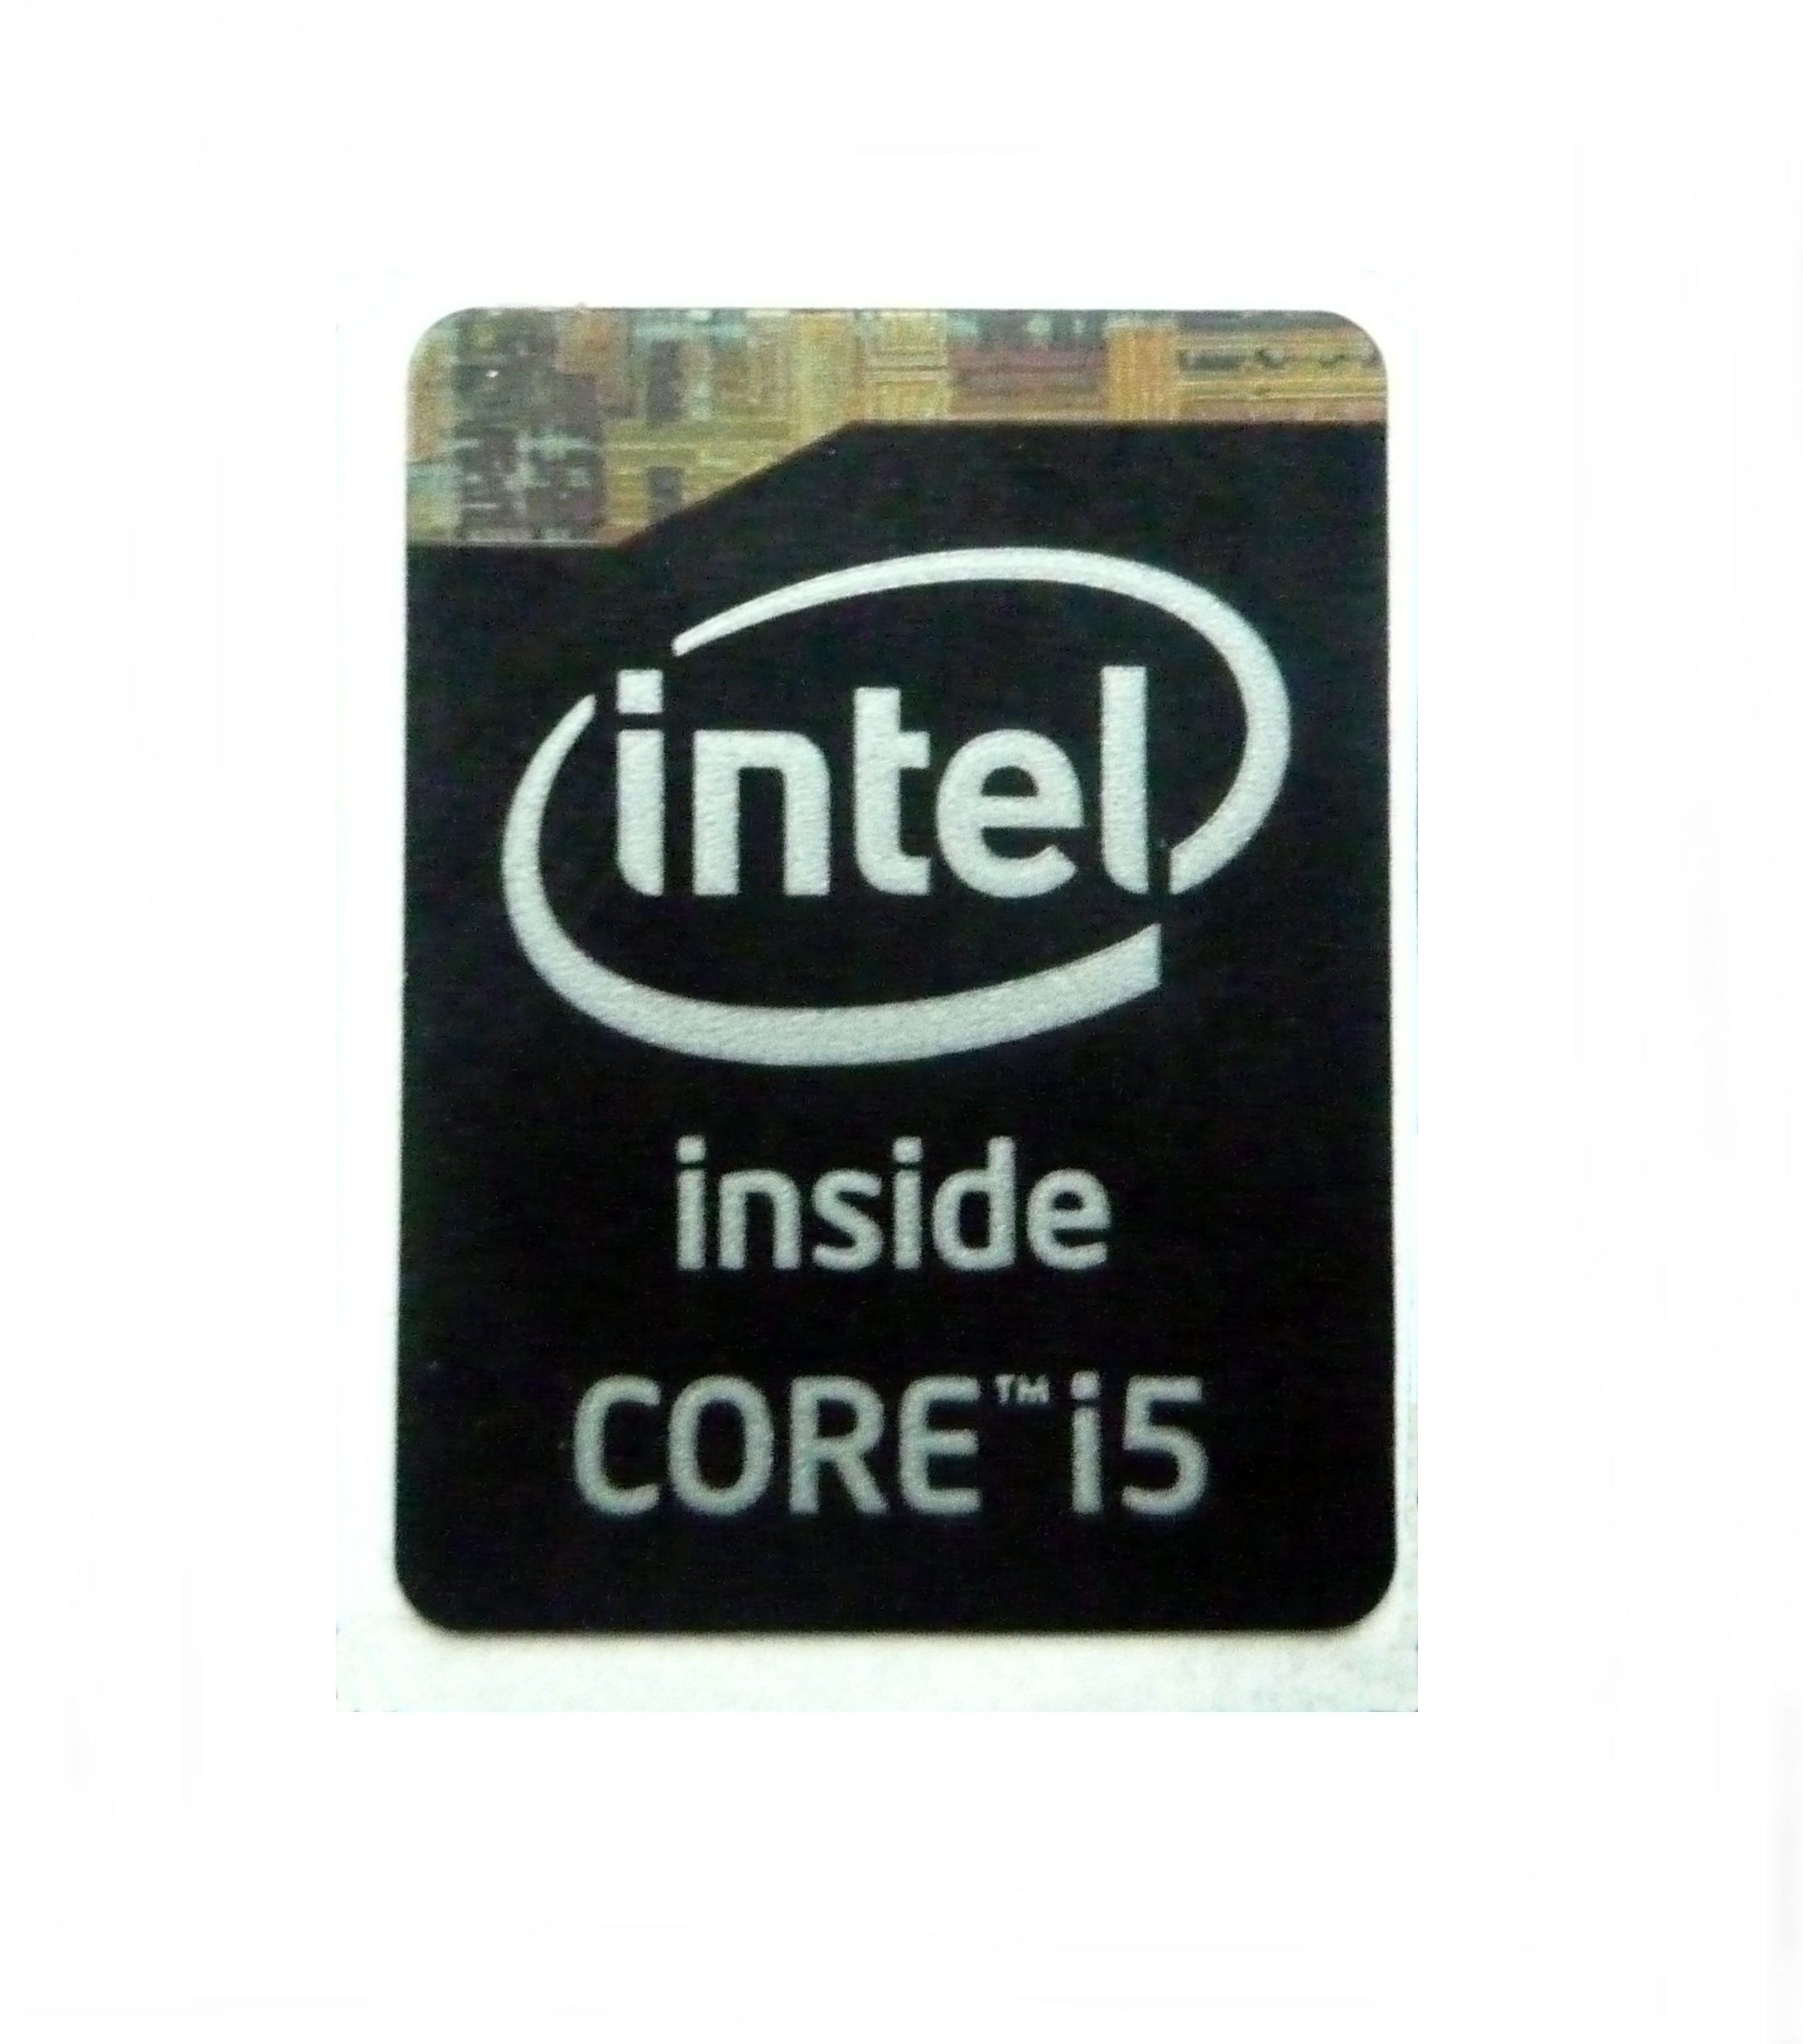 Интел i7 купить. Наклейка Intel Core i7 inside. Процессор Intel Core i5 inside. Intel Core i5 inside наклейка. Наклейка Intel Core i5 11 Gen.